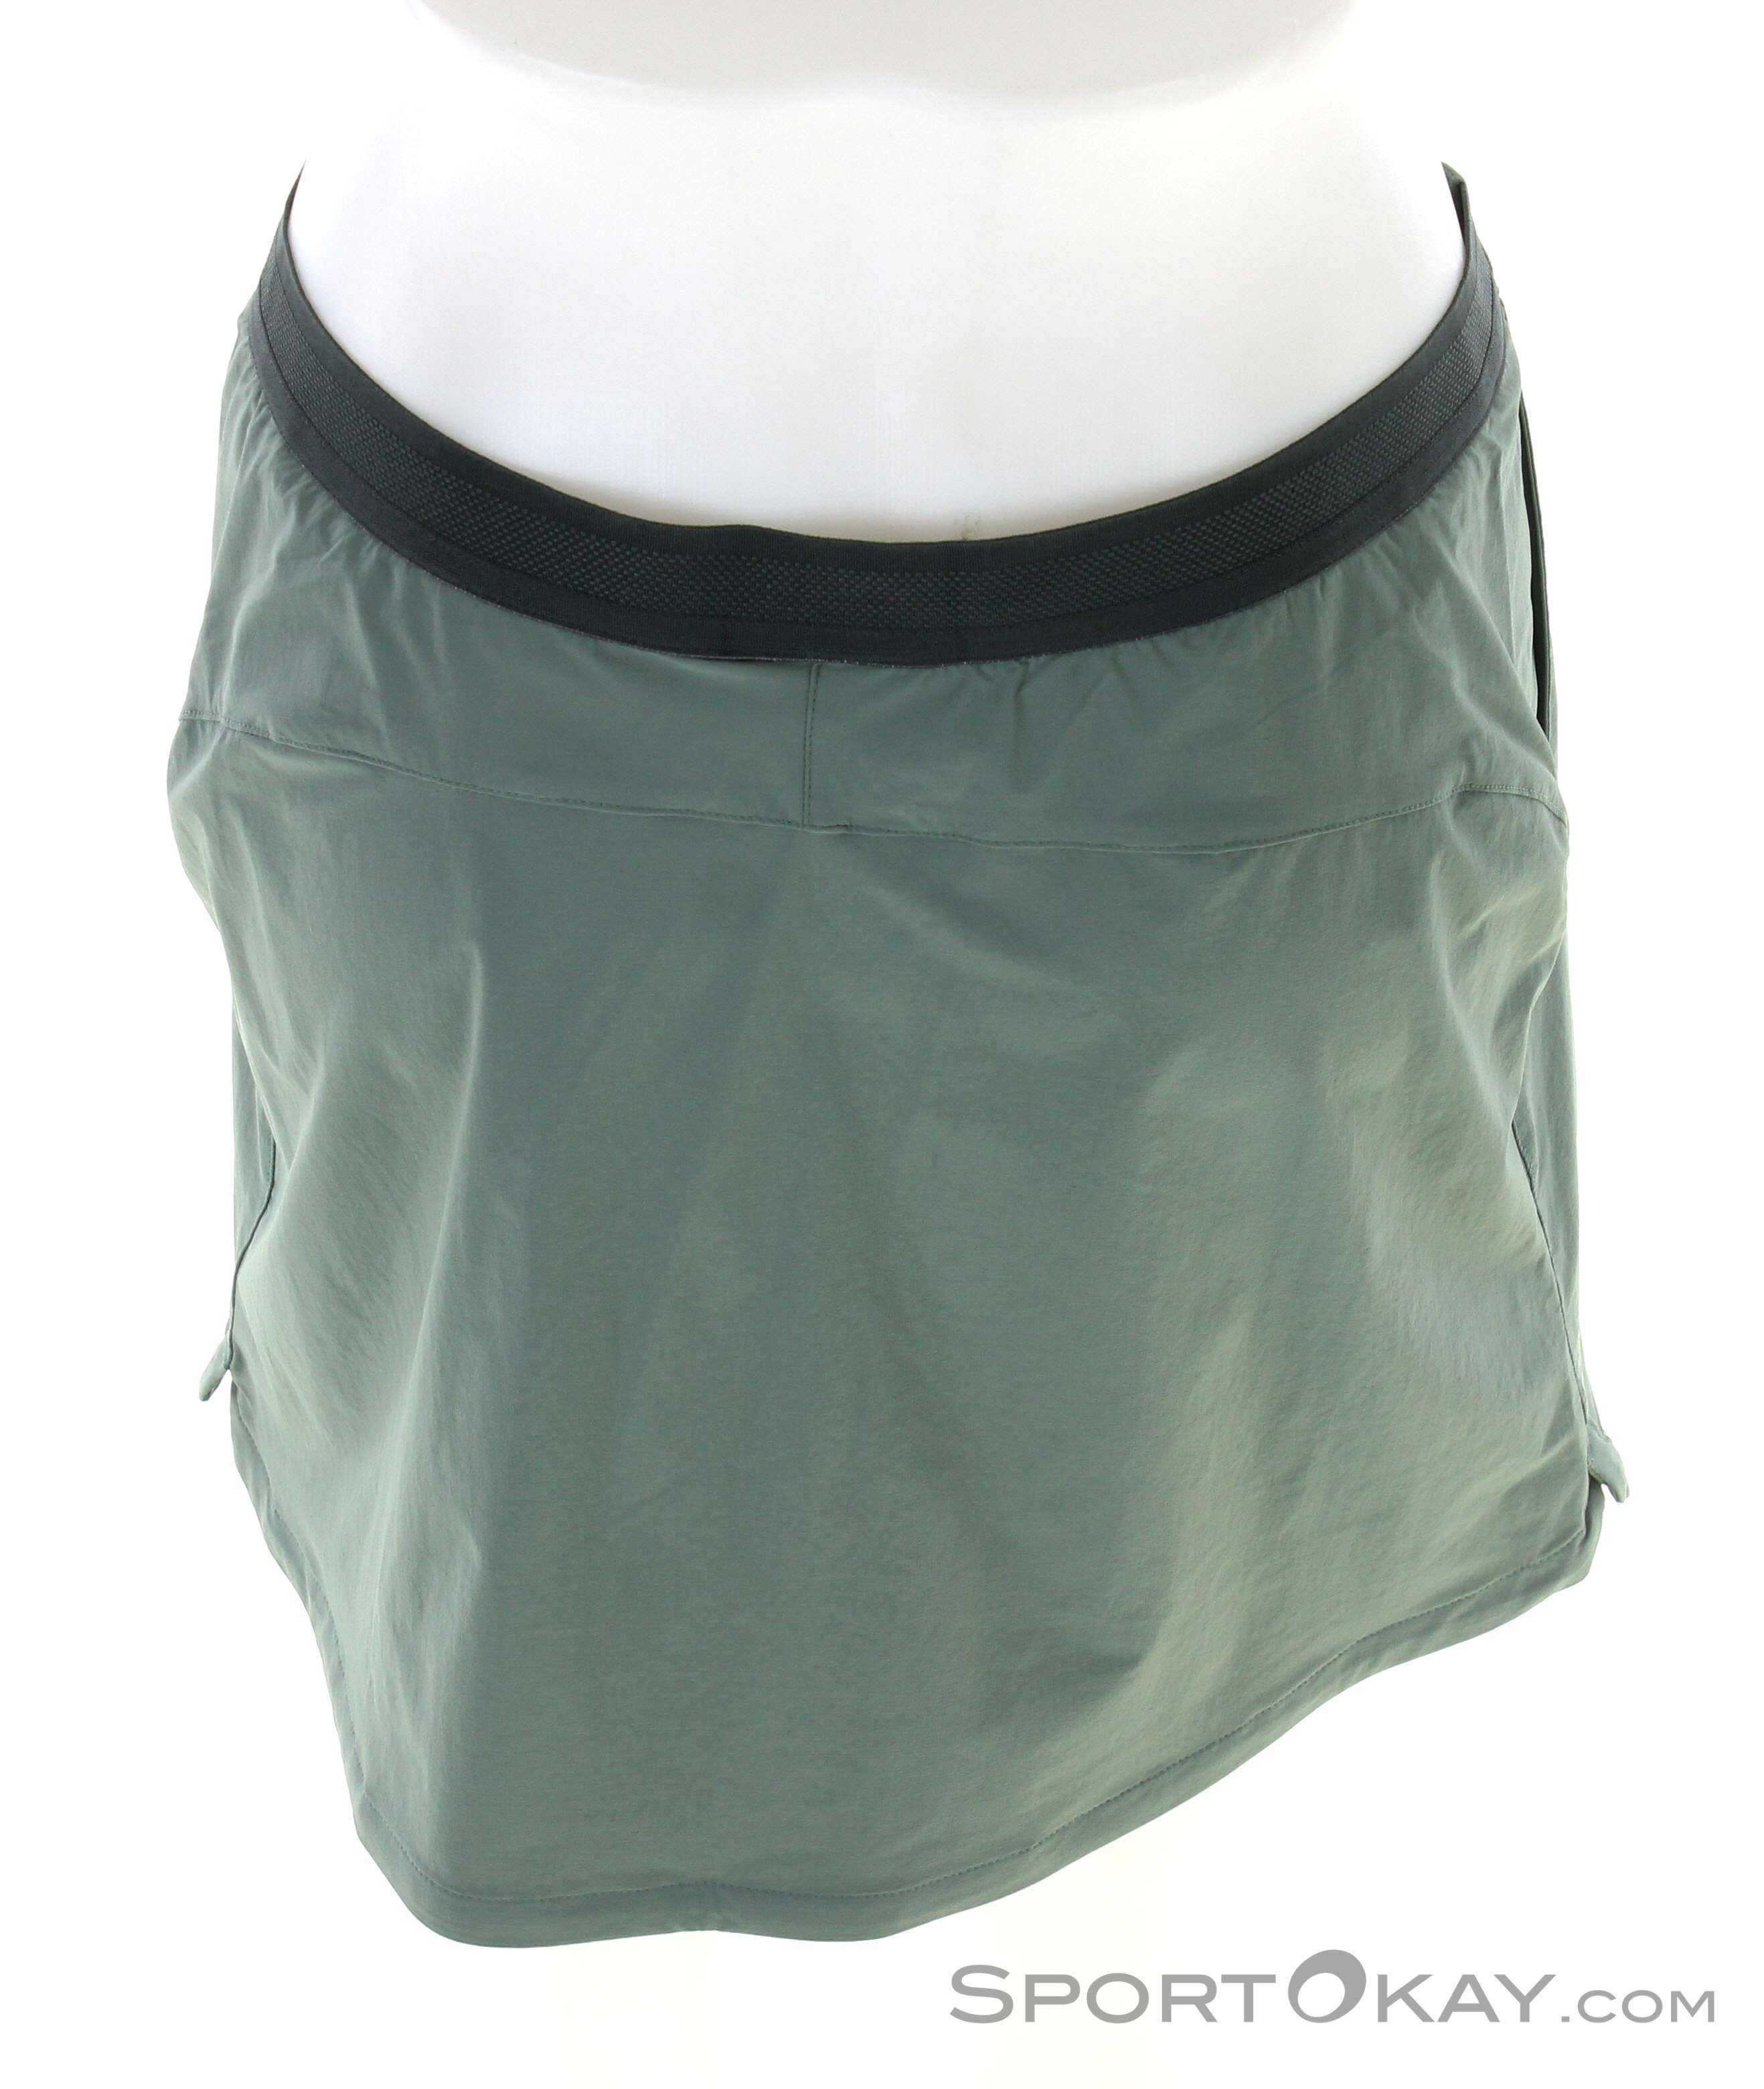 Jack Wolfskin Hilltop Outdoor Skort All - - Clothing Women Trail Skirt - Pants Outdoor Outdoor 